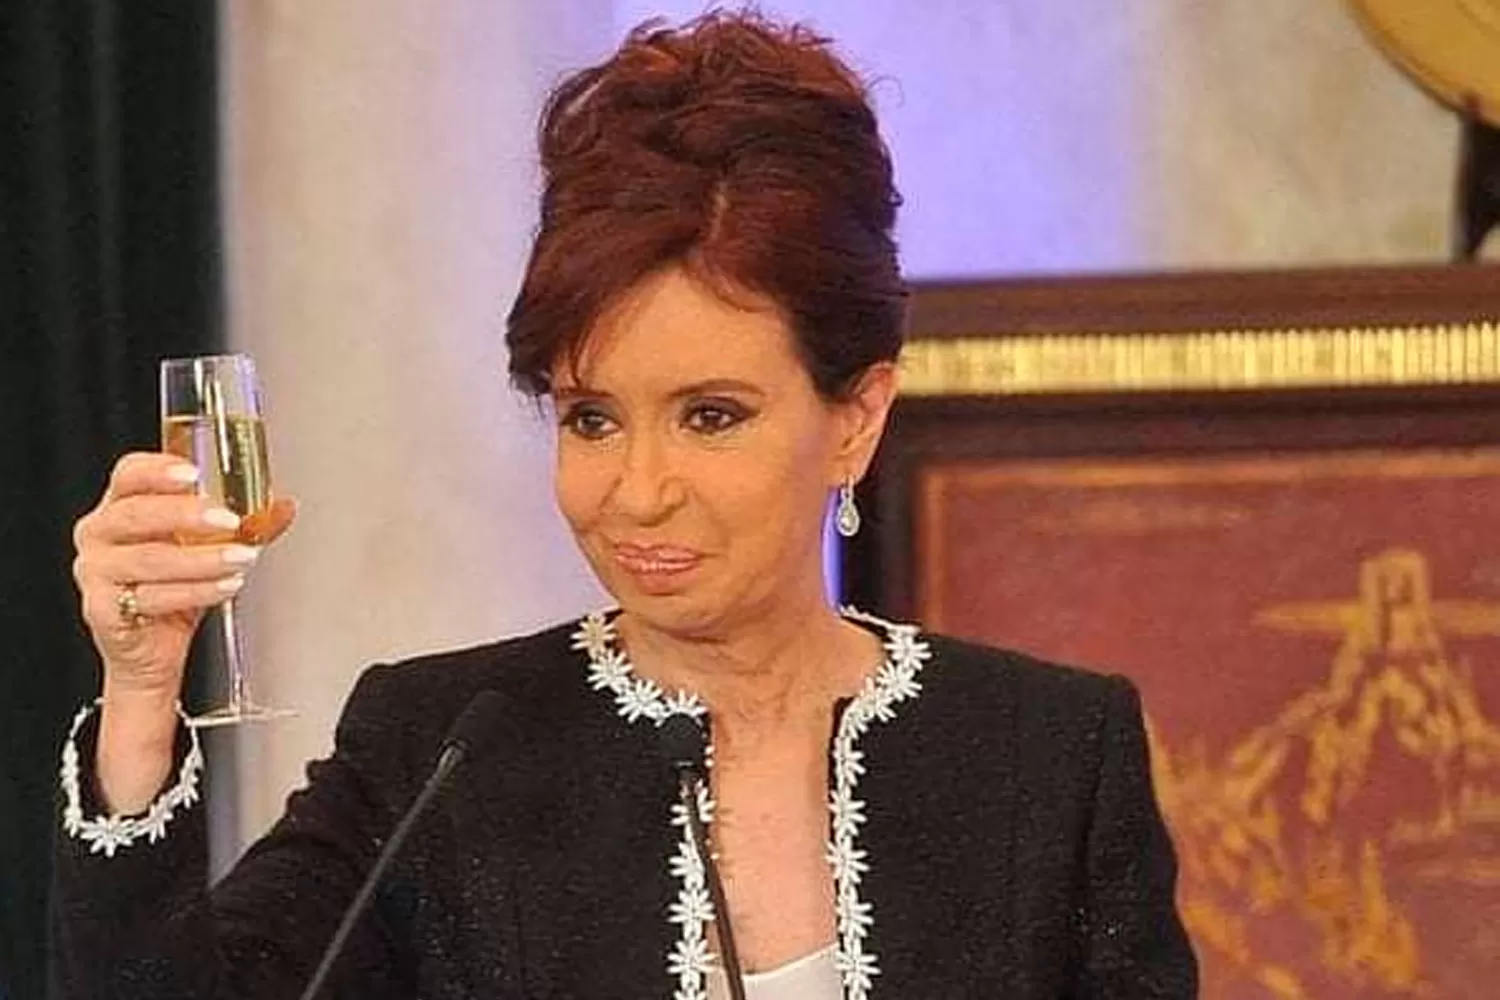 CUMPLEAÑOS. La vicepresidenta recibe los 67 años, en Argentina.